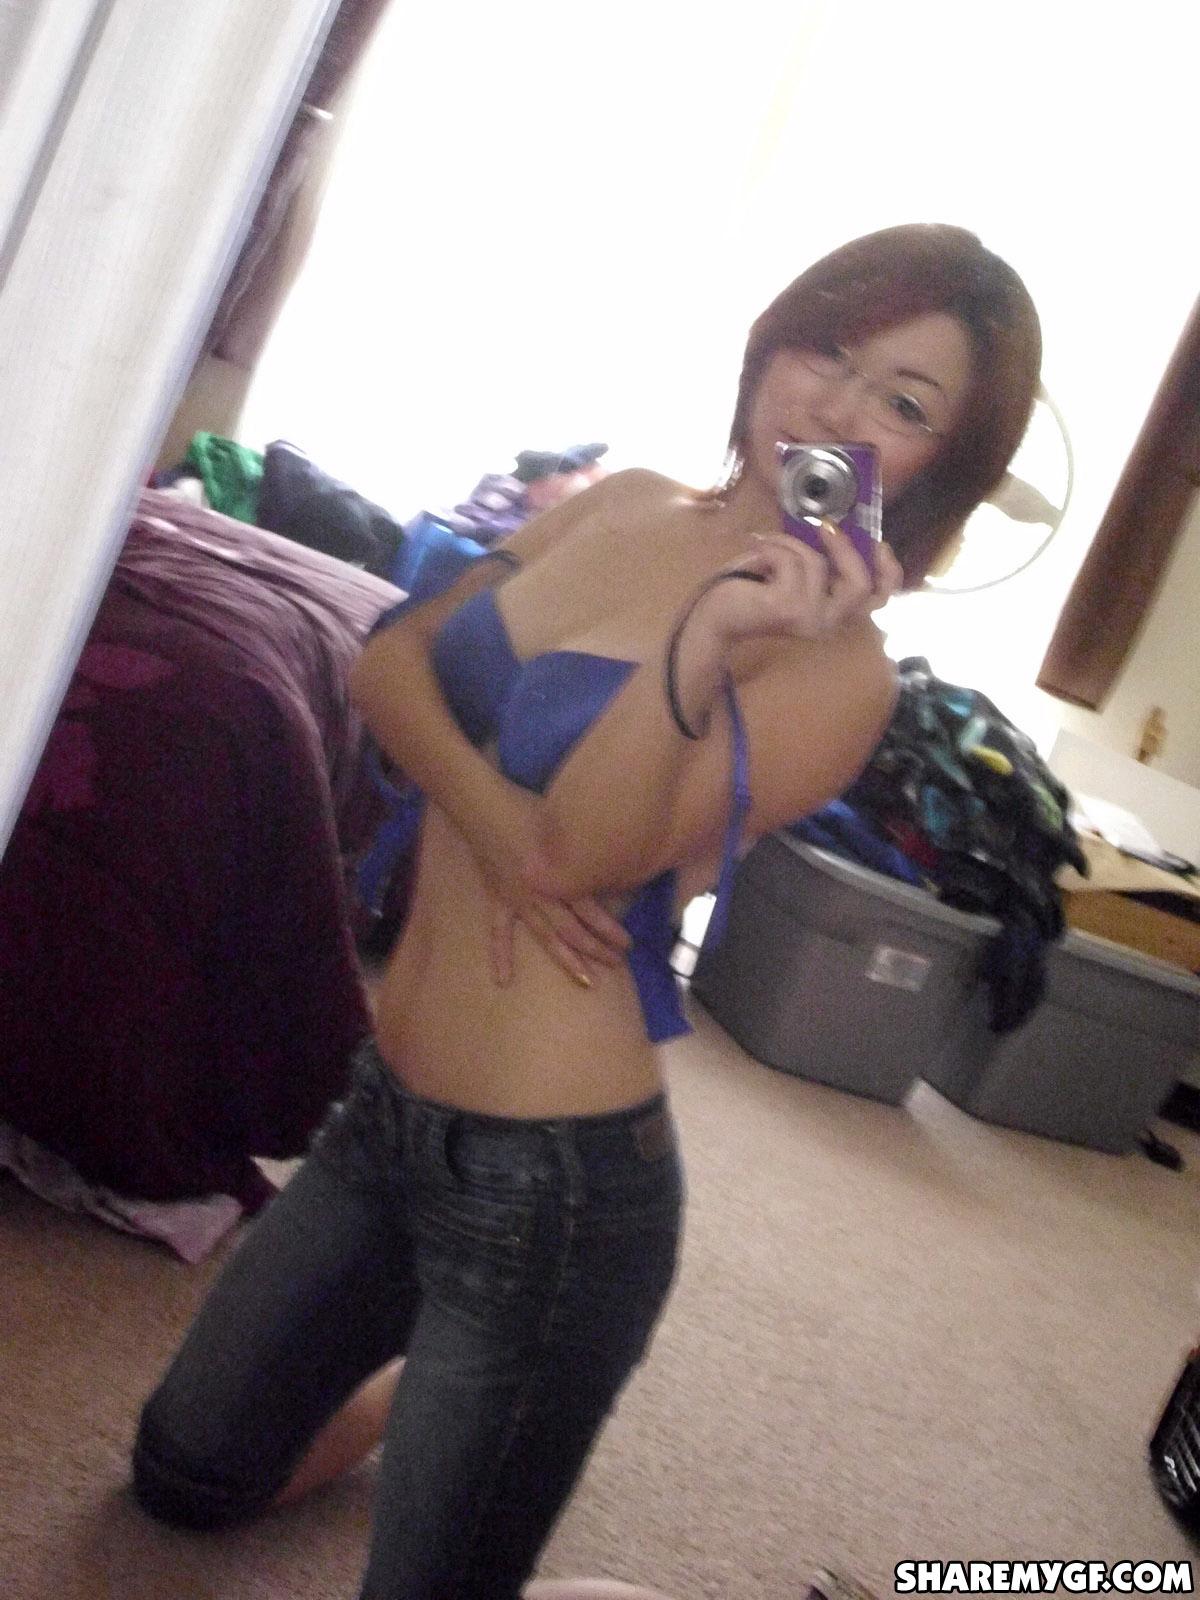 Une étudiante asiatique partage des photos sexy prises dans son dortoir.
 #60795839